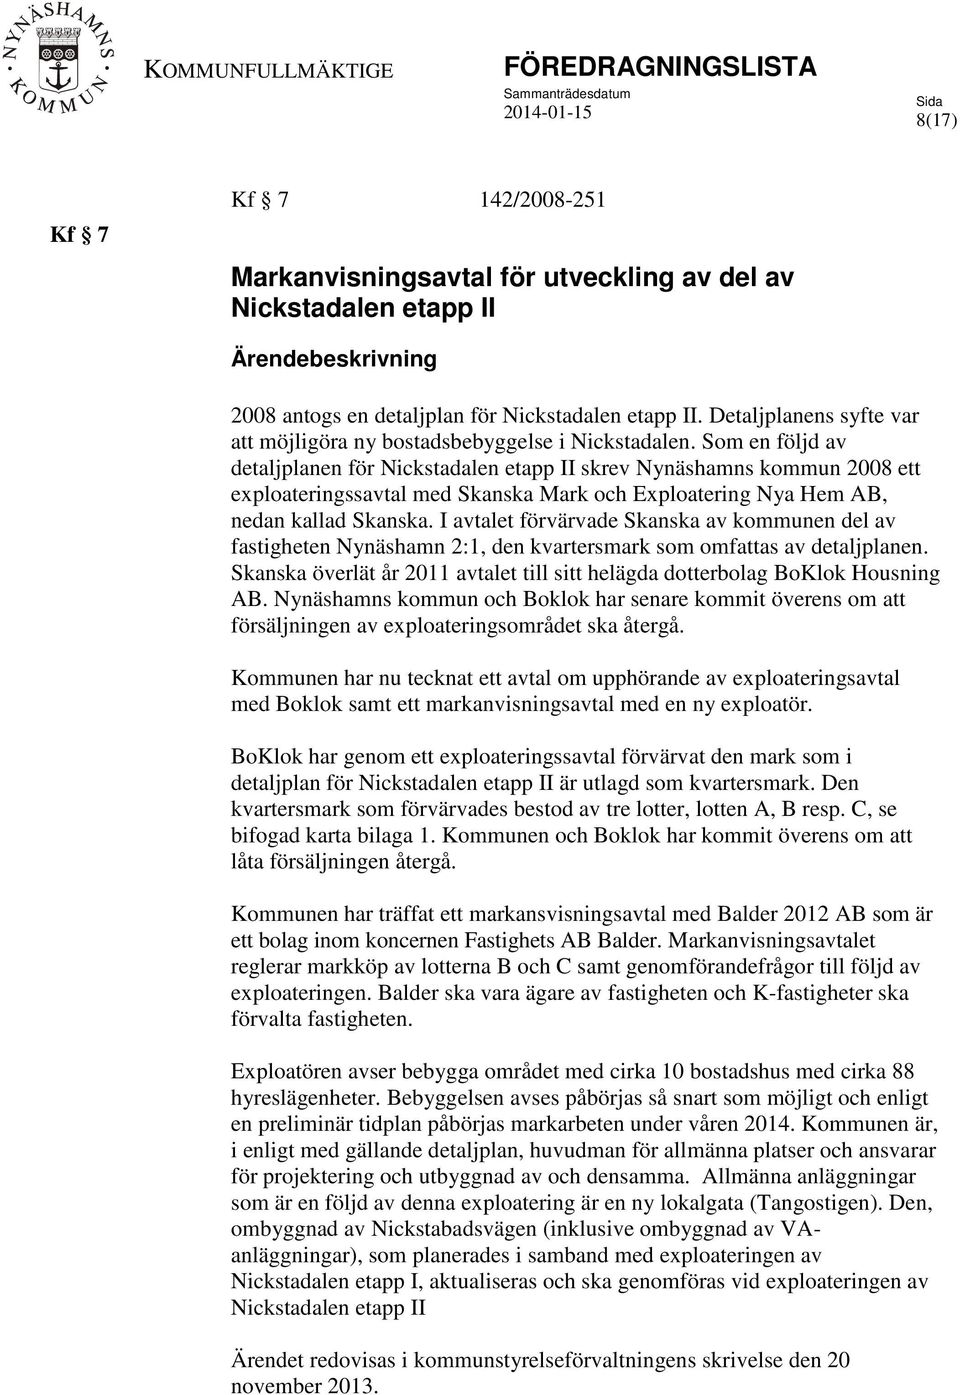 Som en följd av detaljplanen för Nickstadalen etapp II skrev Nynäshamns kommun 2008 ett exploateringssavtal med Skanska Mark och Exploatering Nya Hem AB, nedan kallad Skanska.